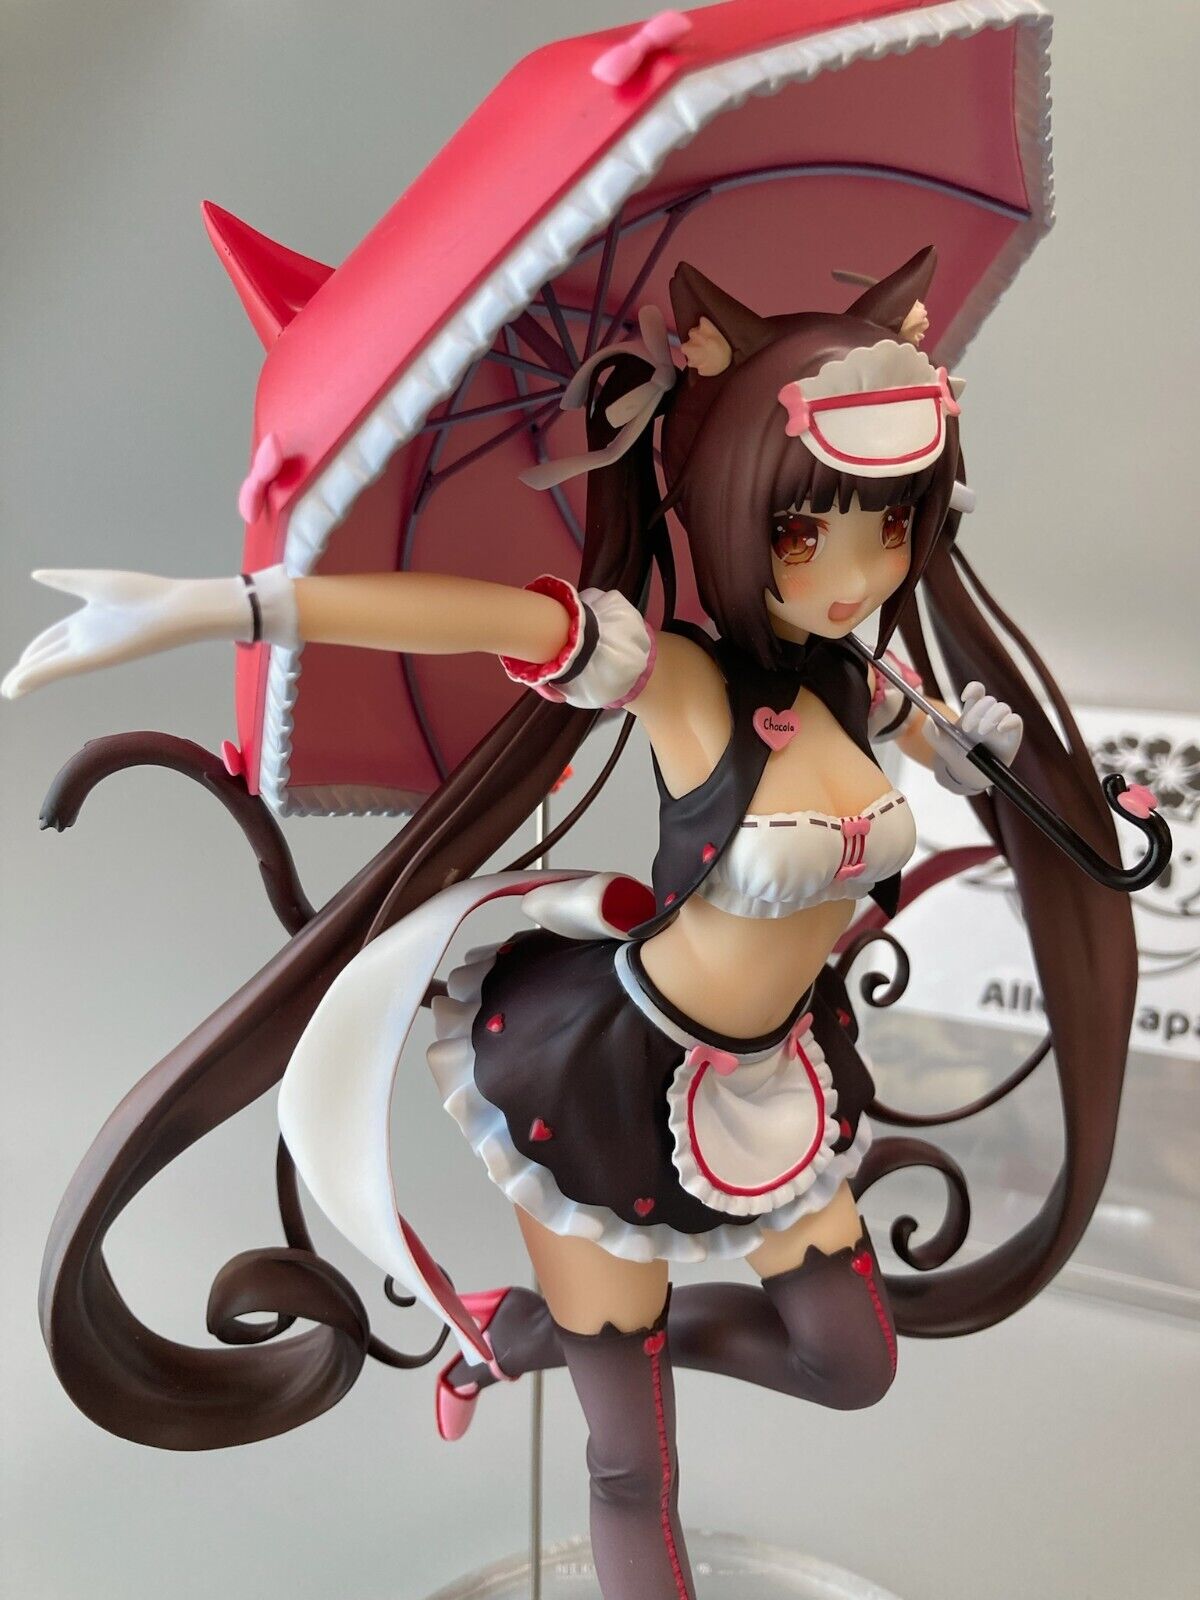 Nekopara Chocola Race Queen Ver anime Figure 1/7 Scale Toy Character Goods